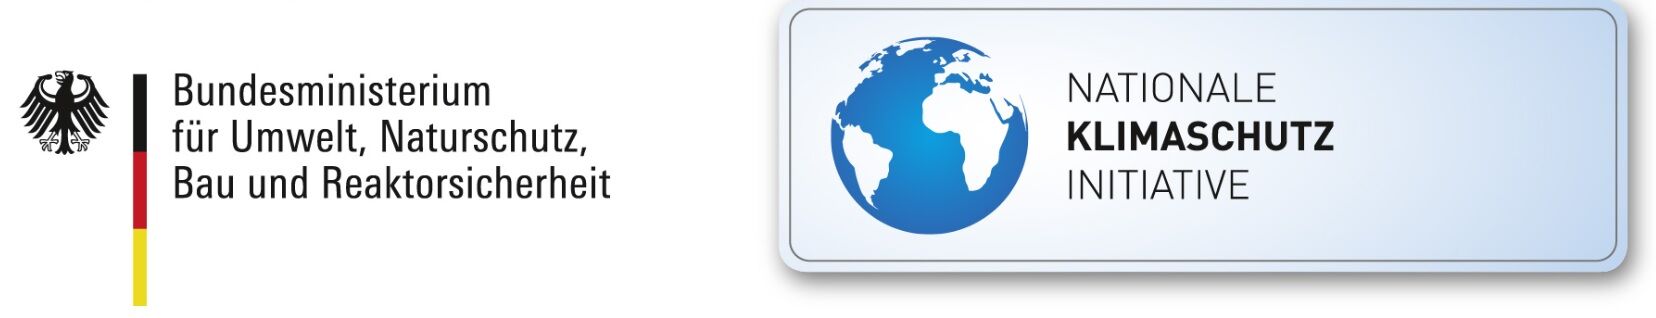 logo klimaschutz w